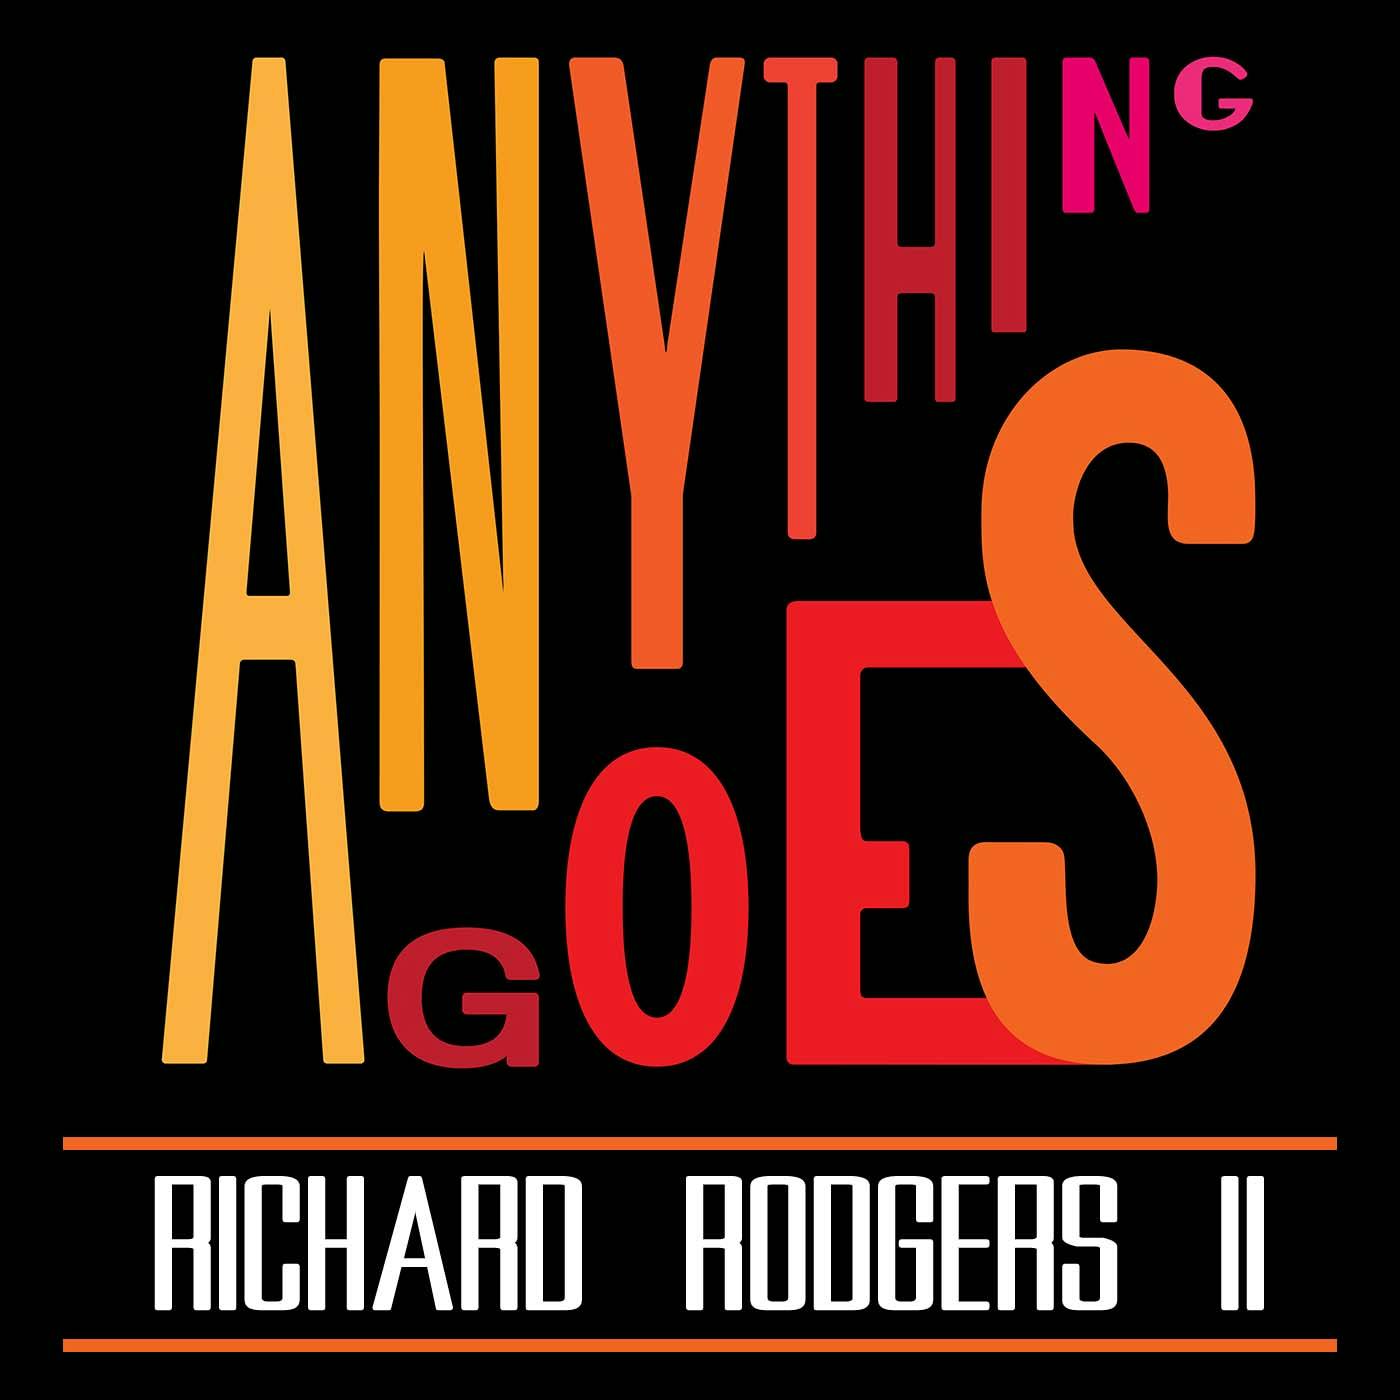 92 Richard Rodgers II